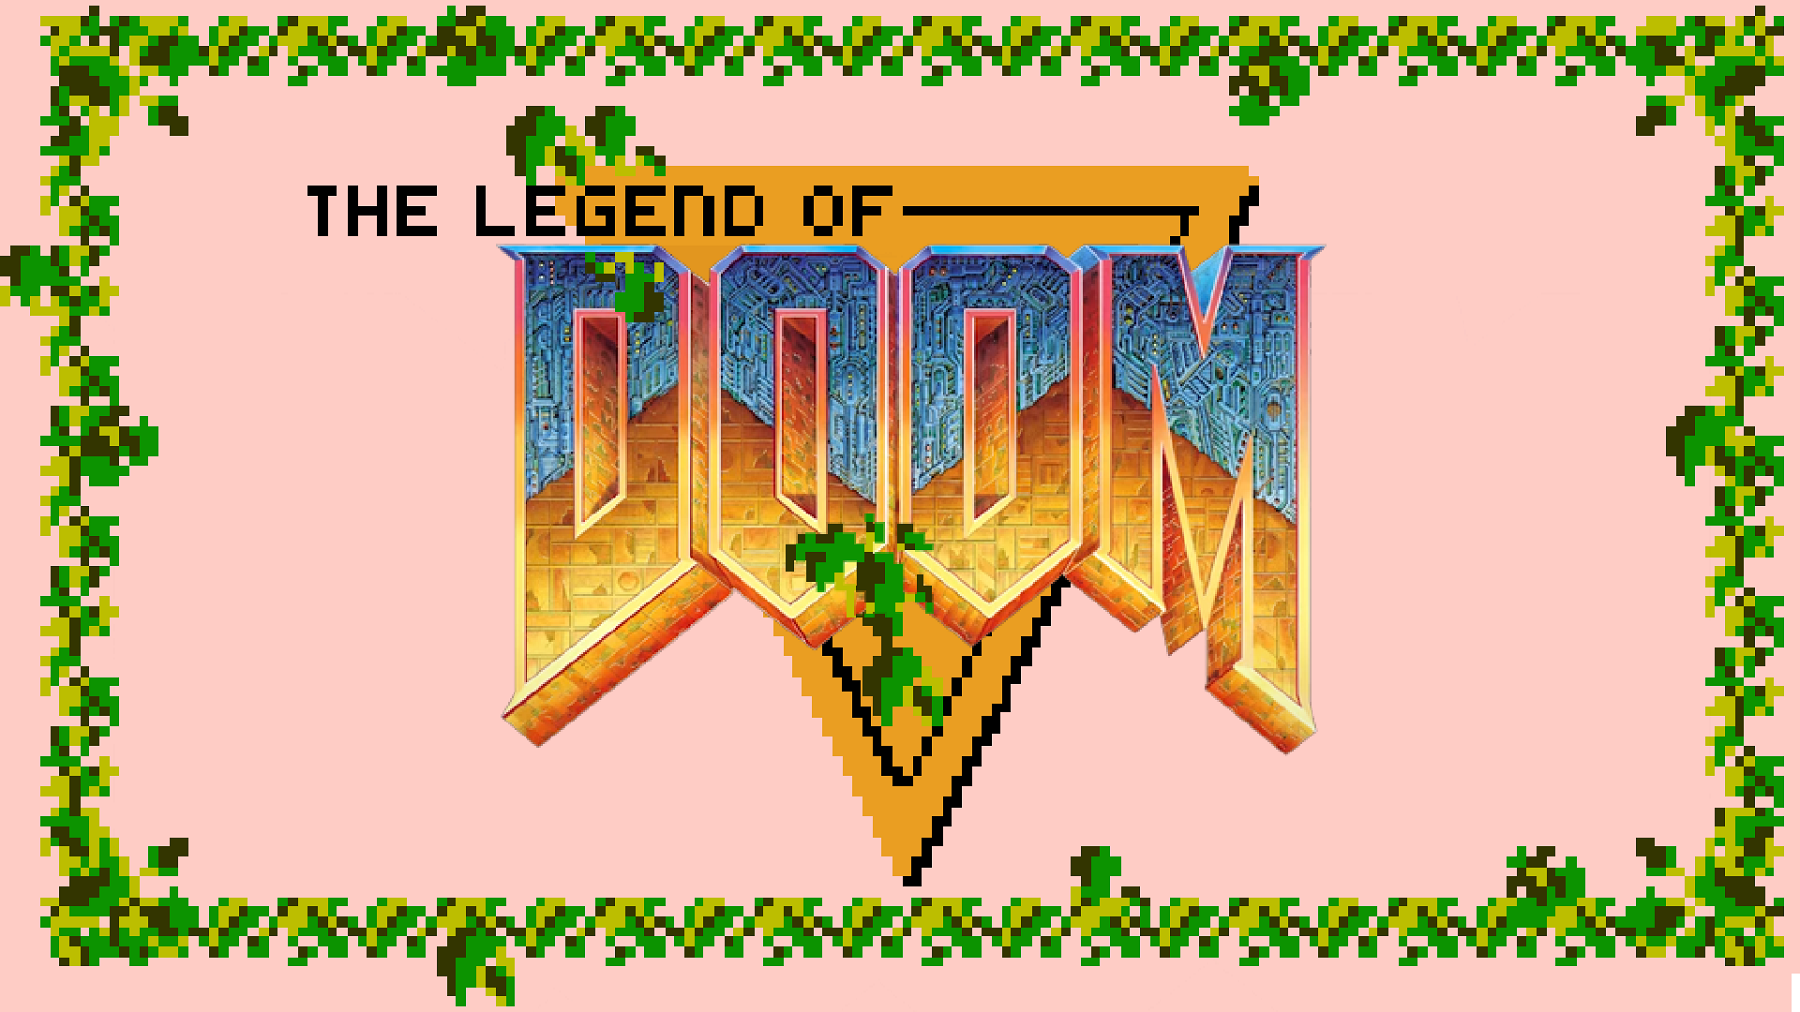 Image showing the Doom logo on the Legend of Zelda background.